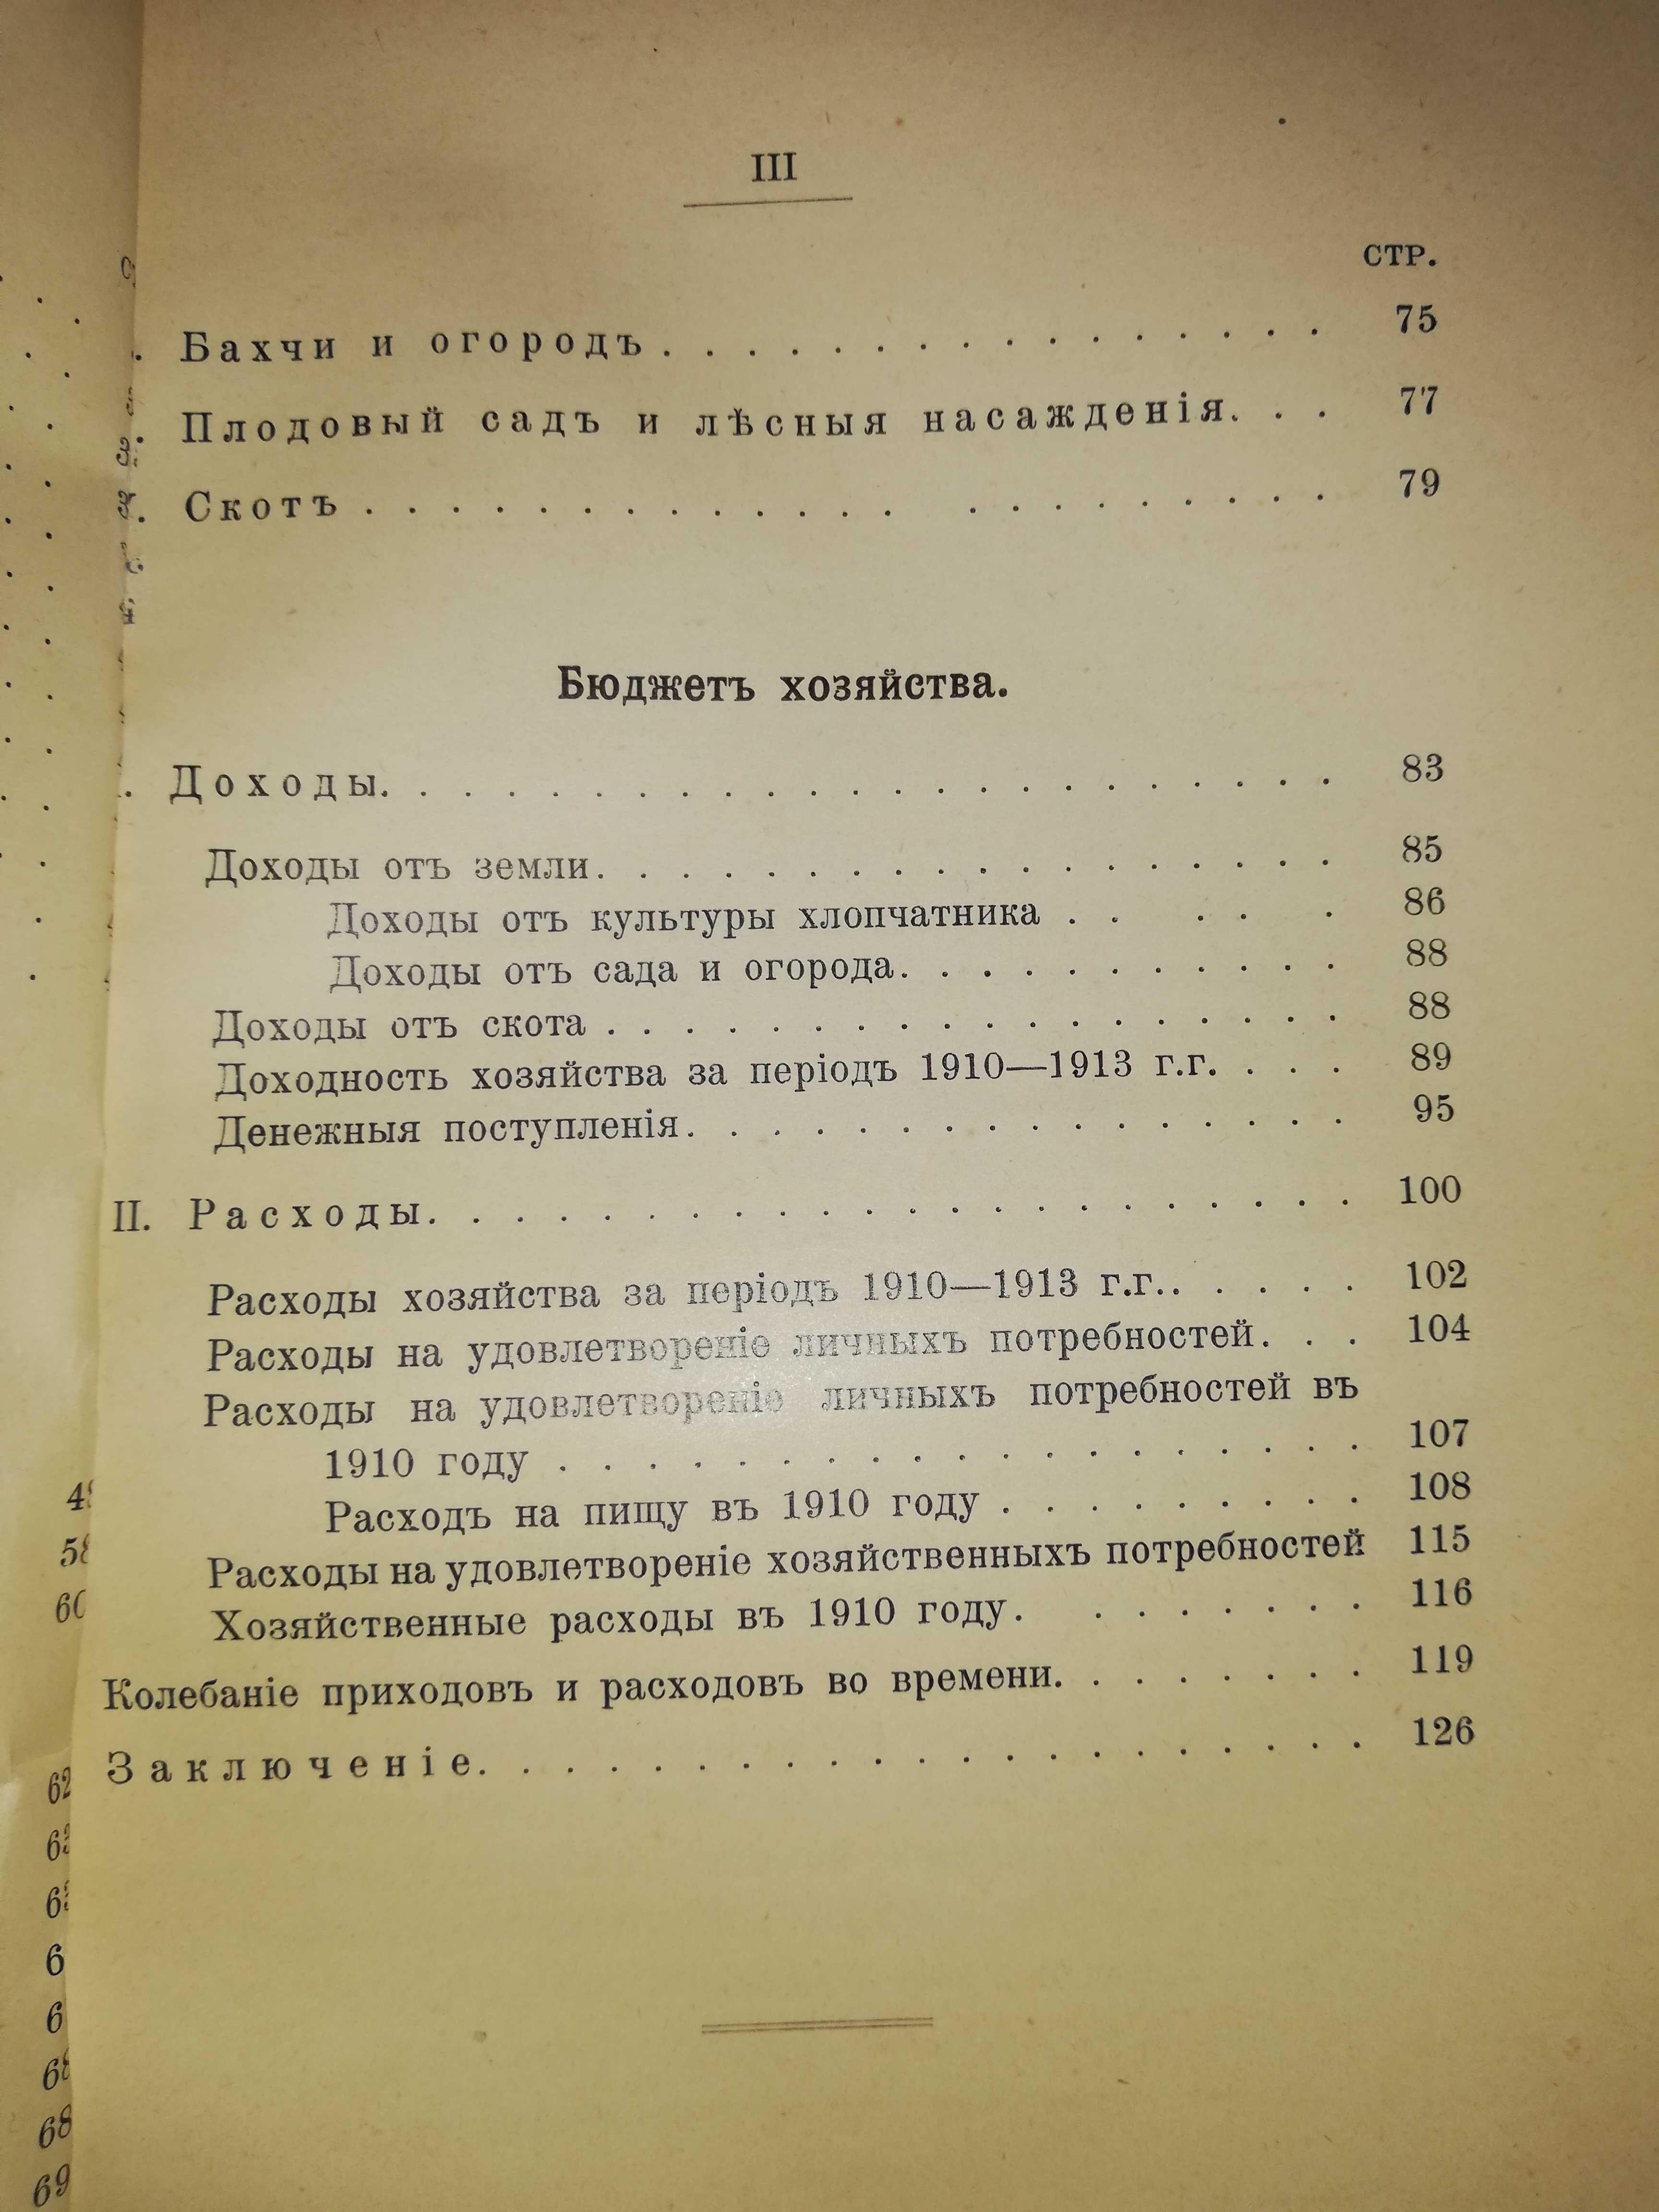 Книга "Хлопковое хозяйство в Голодной степи" 1914г.